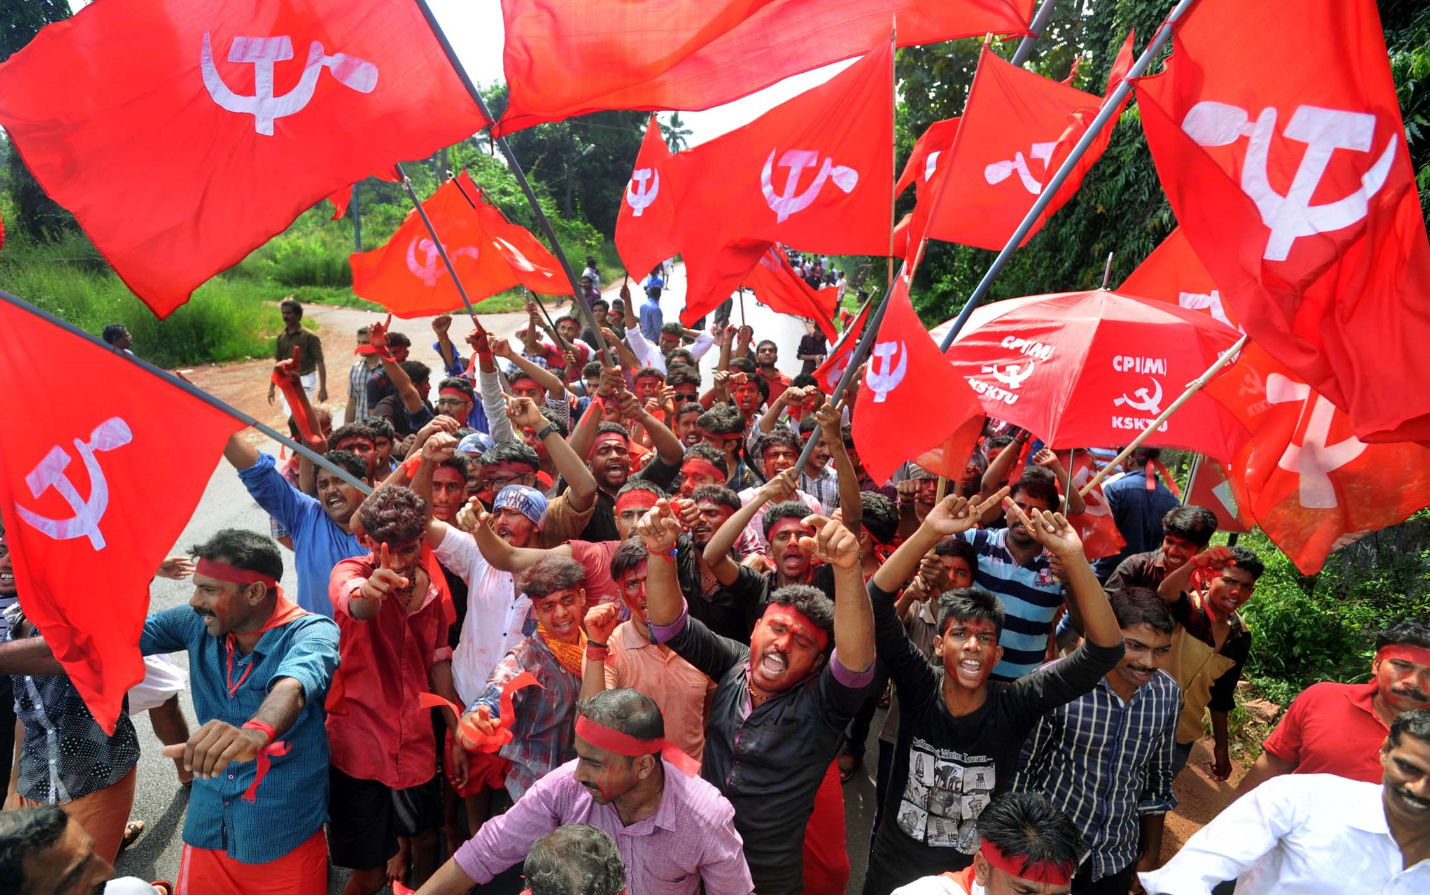 Les communistes s'emparent de la direction de la ville de Kalamassery au Kerala